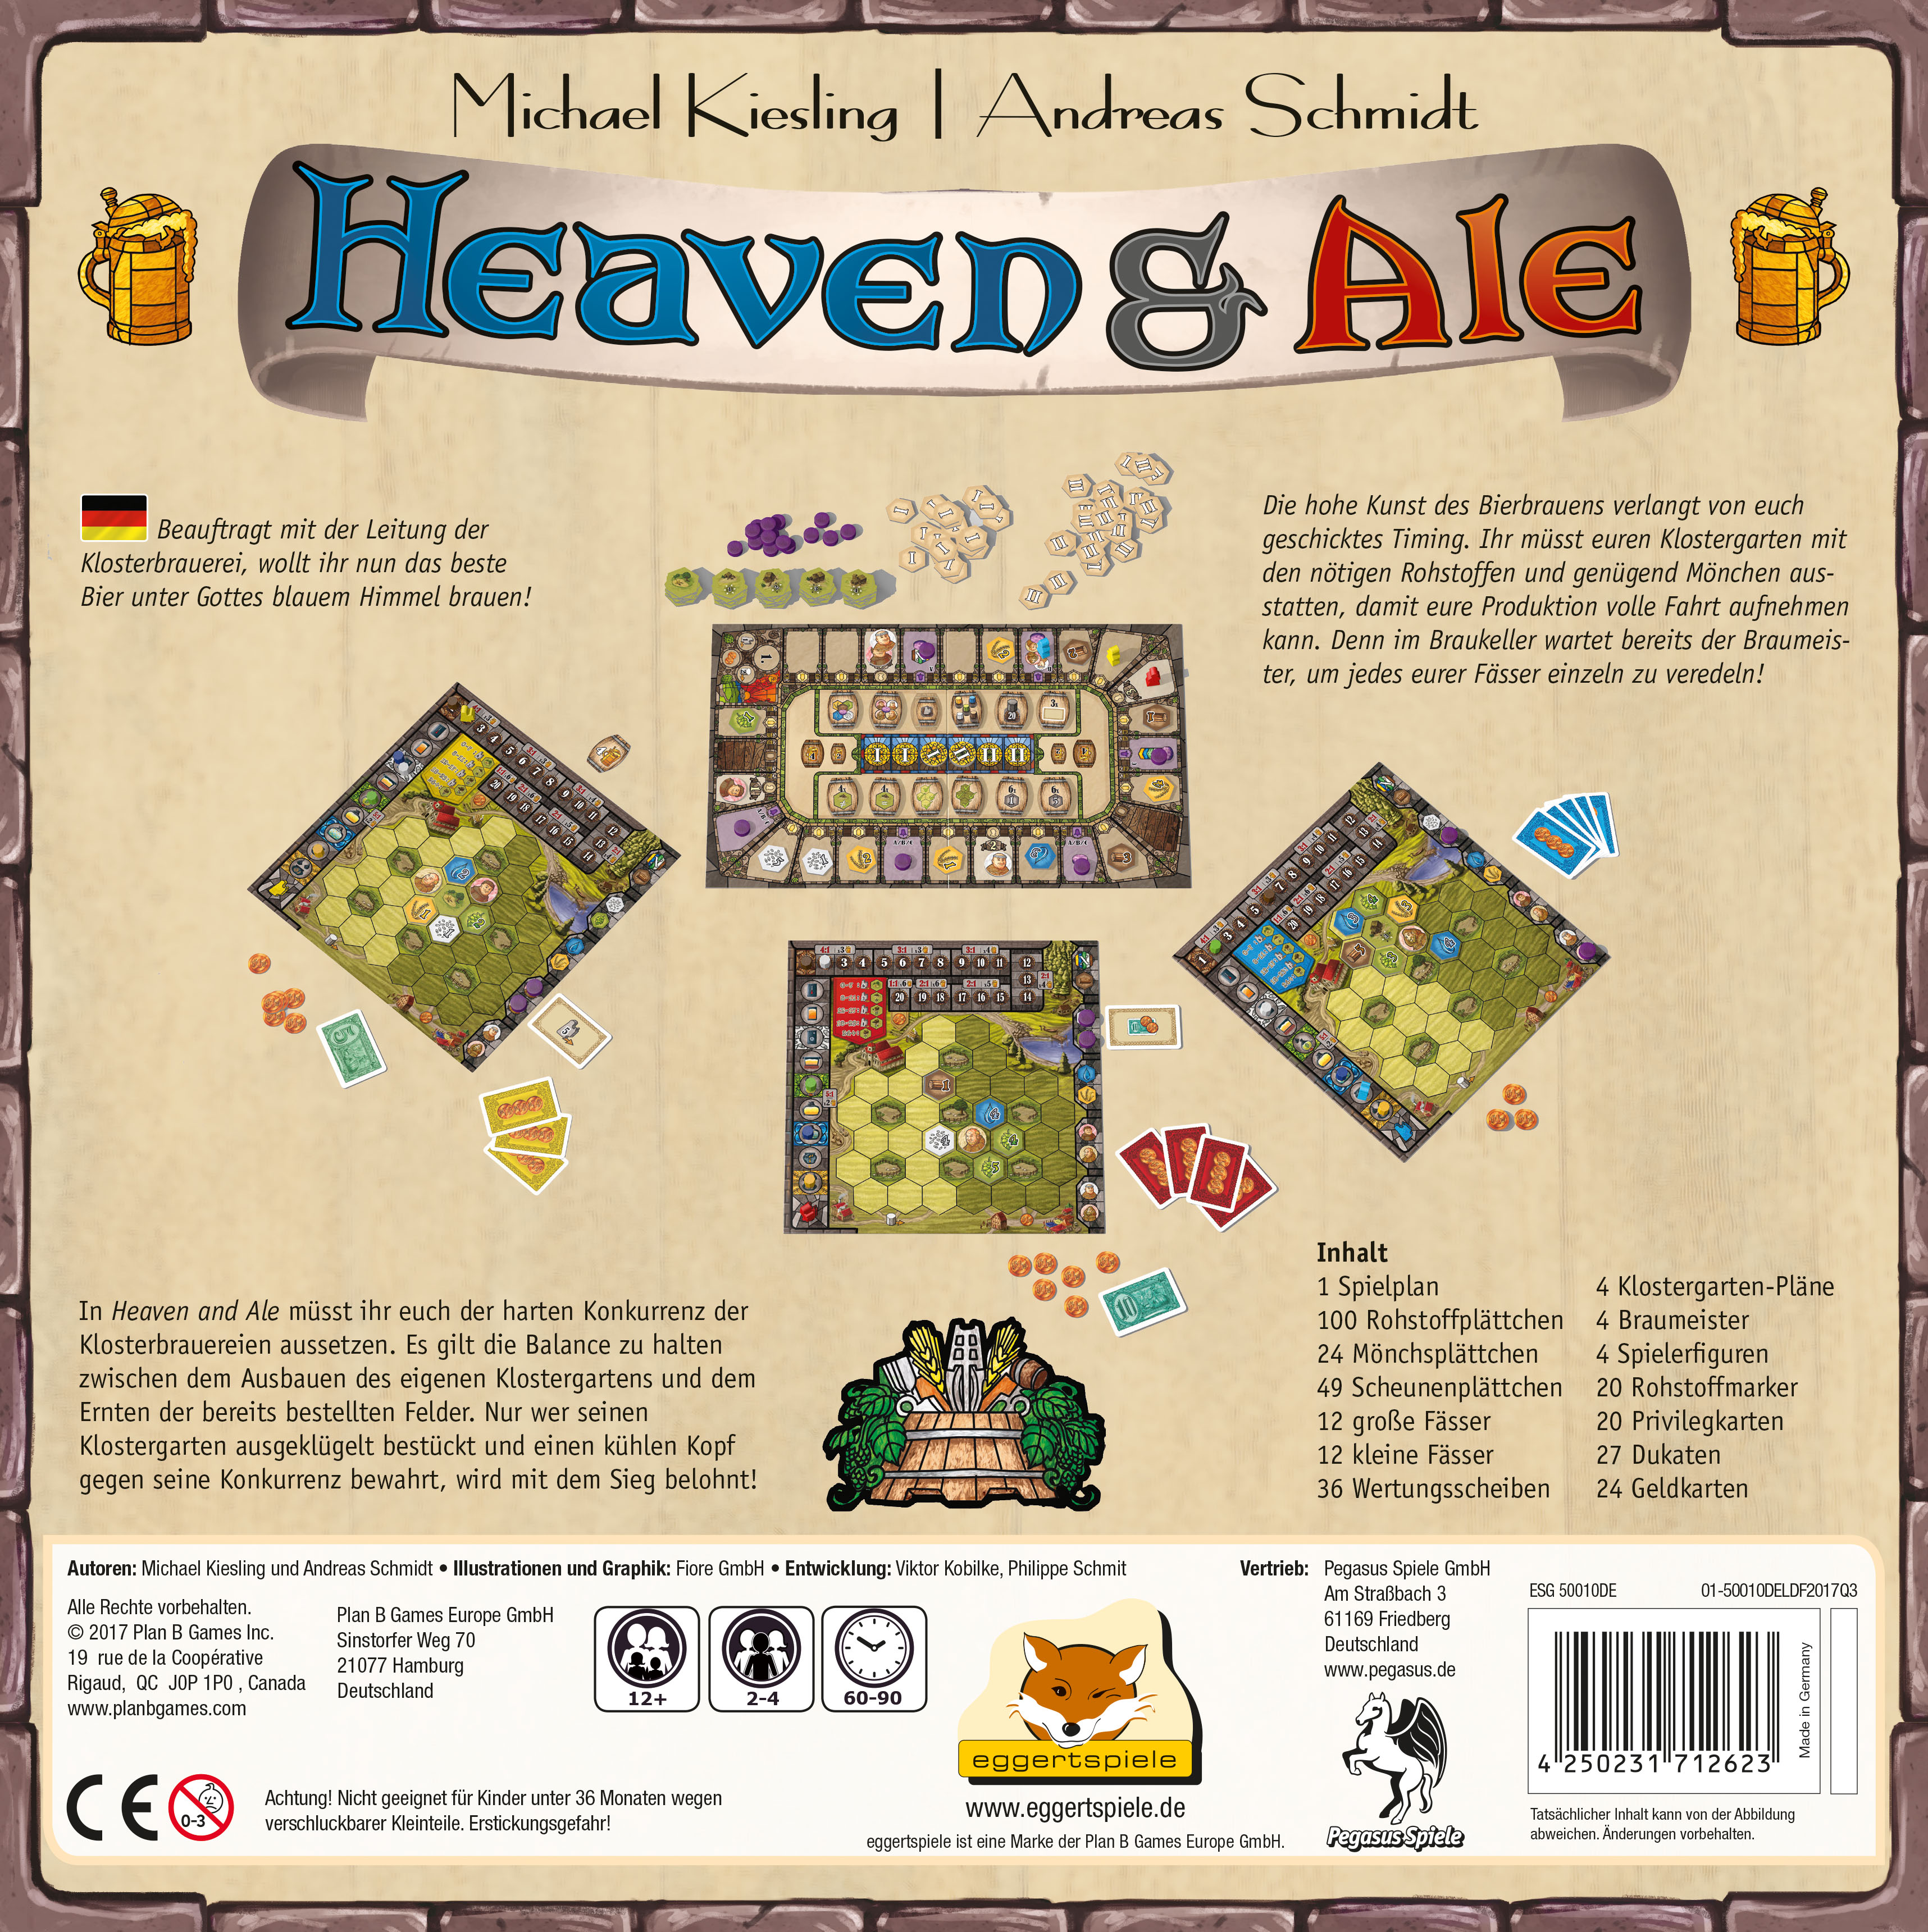 Heaven & Ale erscheint zur Spiel 2017 bei eggertspiele